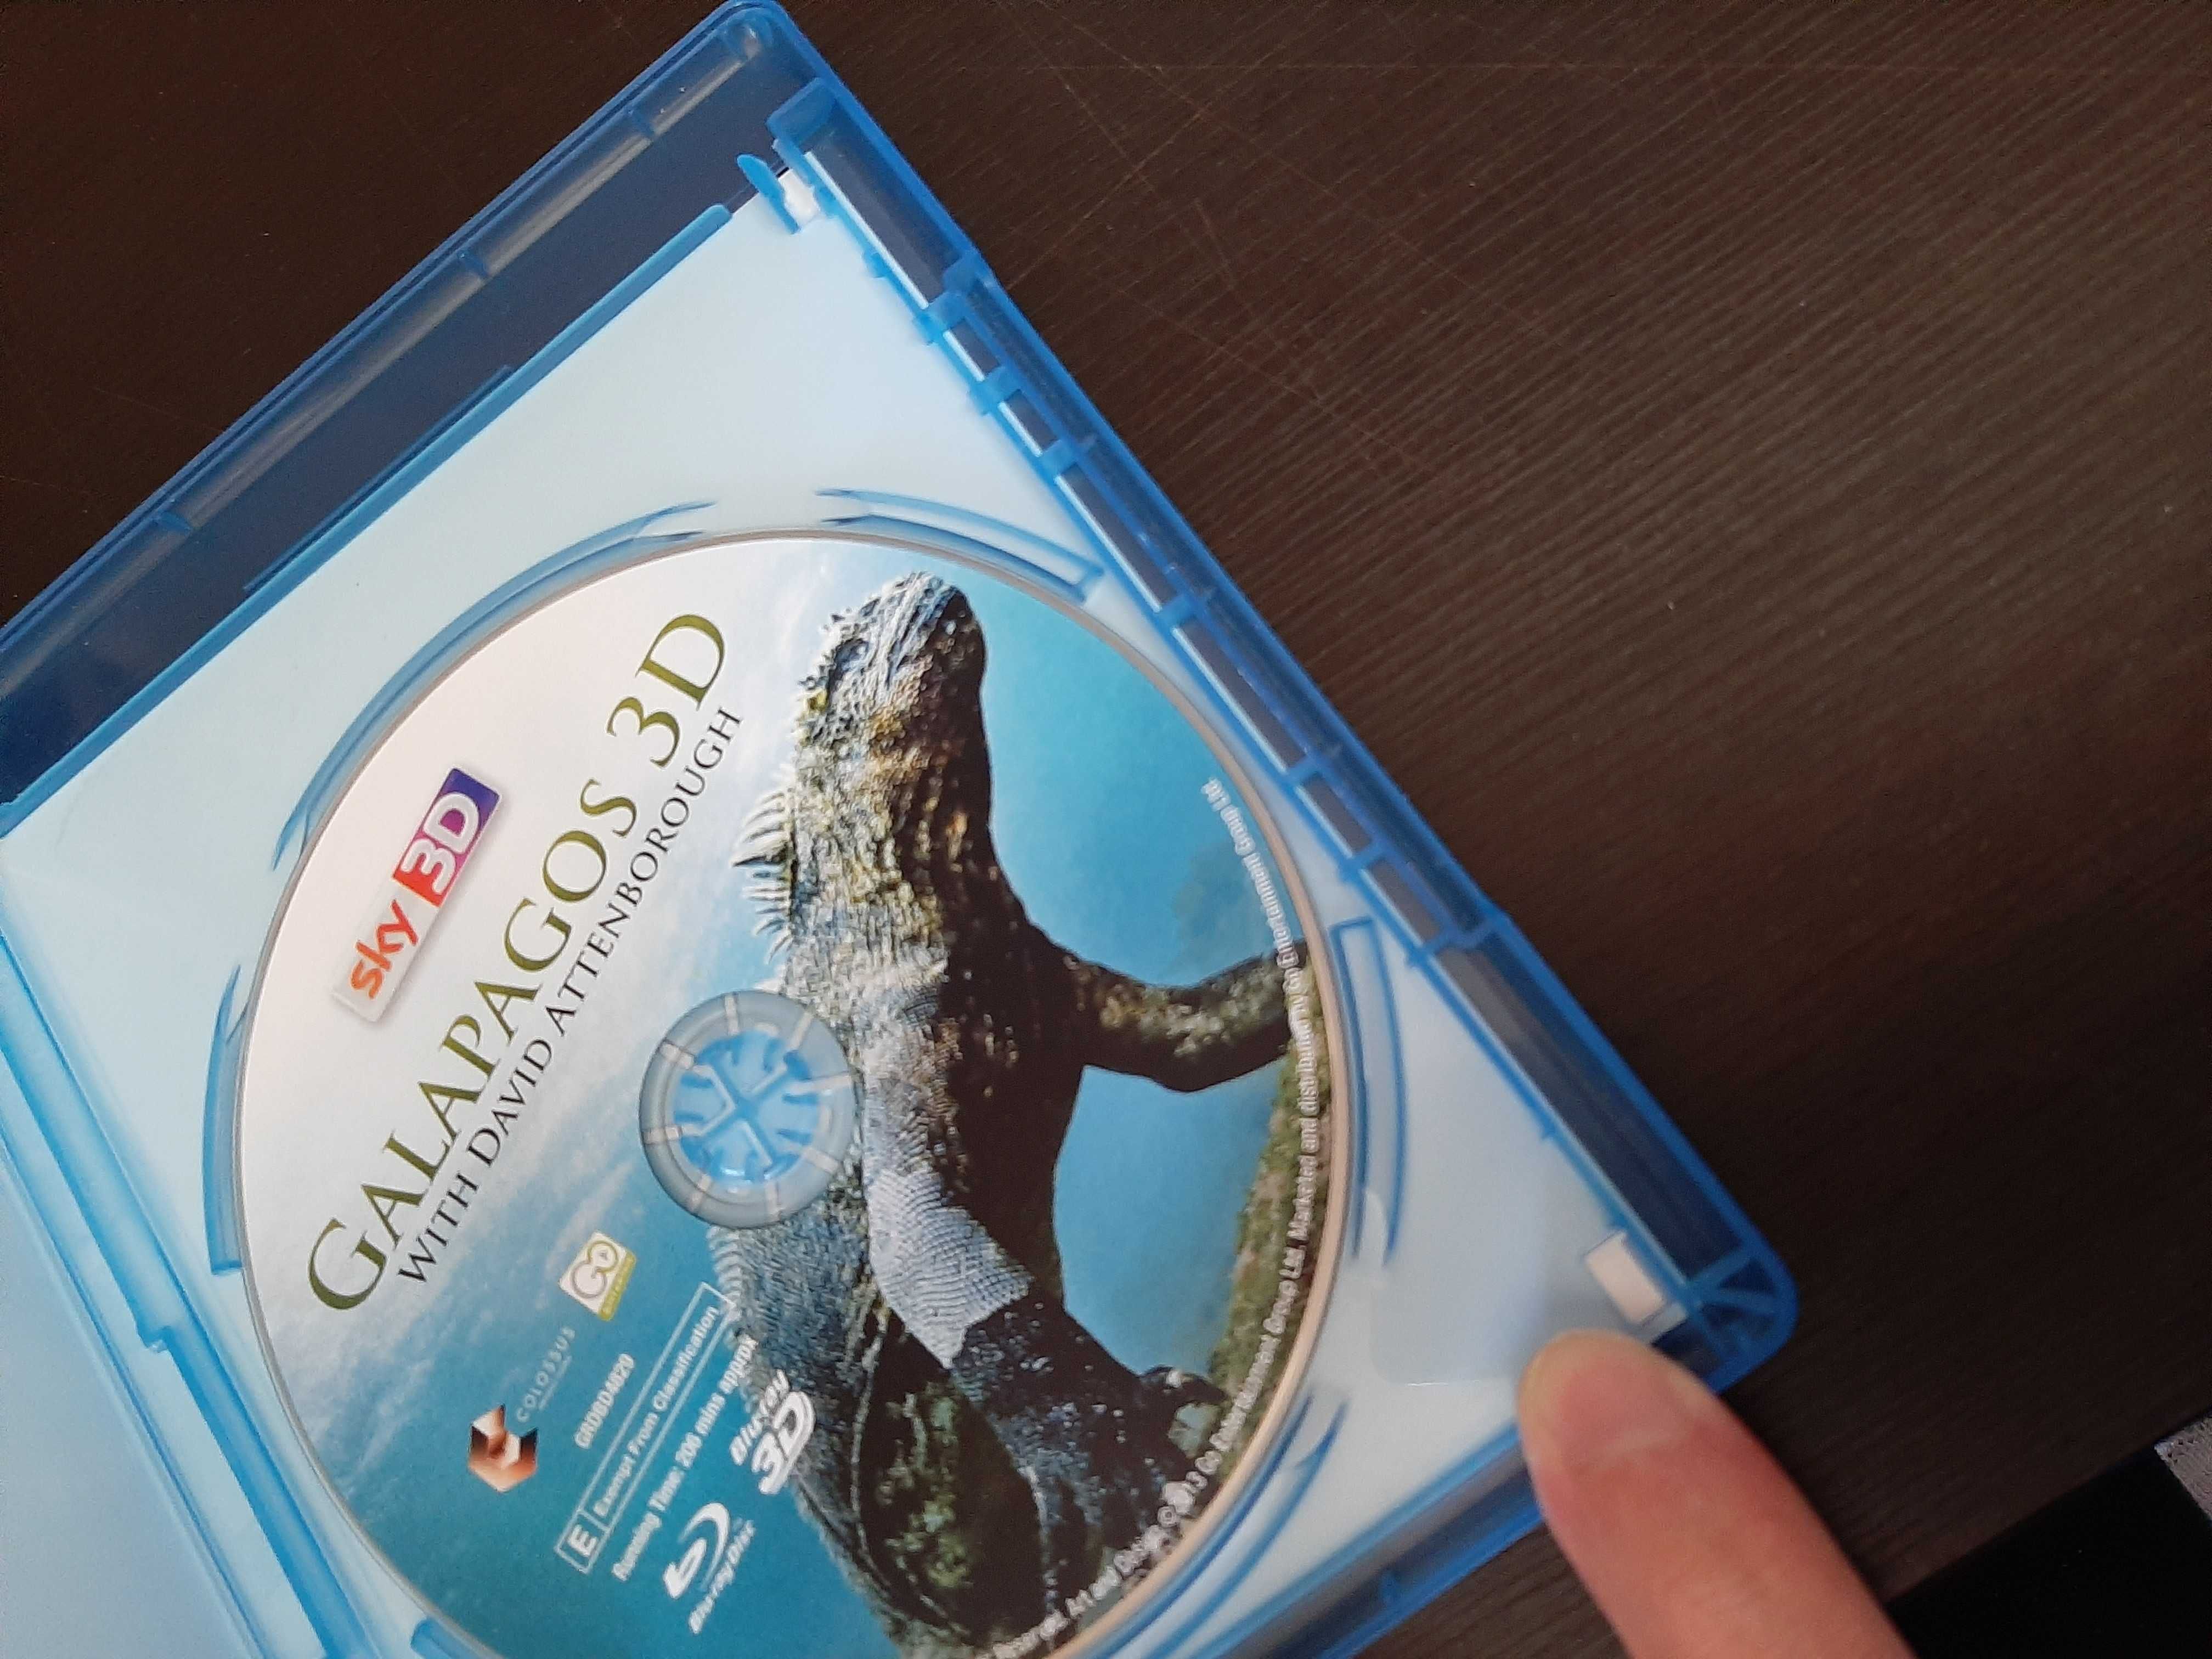 Galápagos 3D - narrado por David Attenborough - Sky 3D - Blu ray